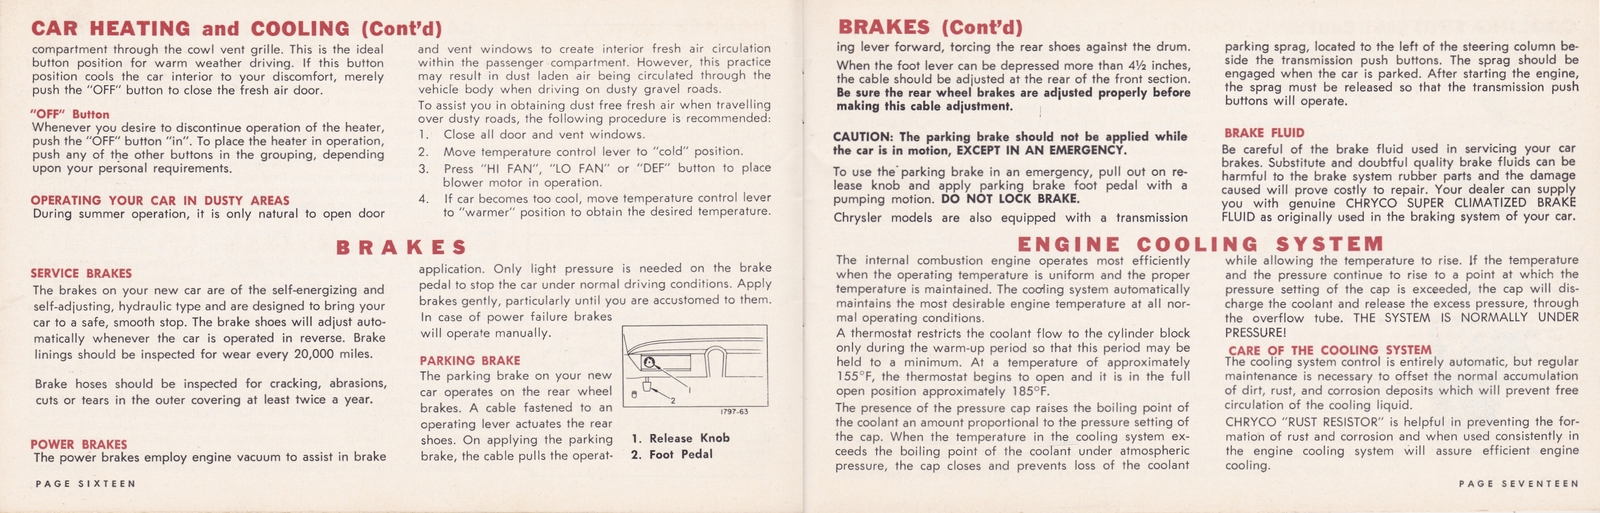 n_1964 Chrysler Owner's Manual (Cdn)-16-17.jpg